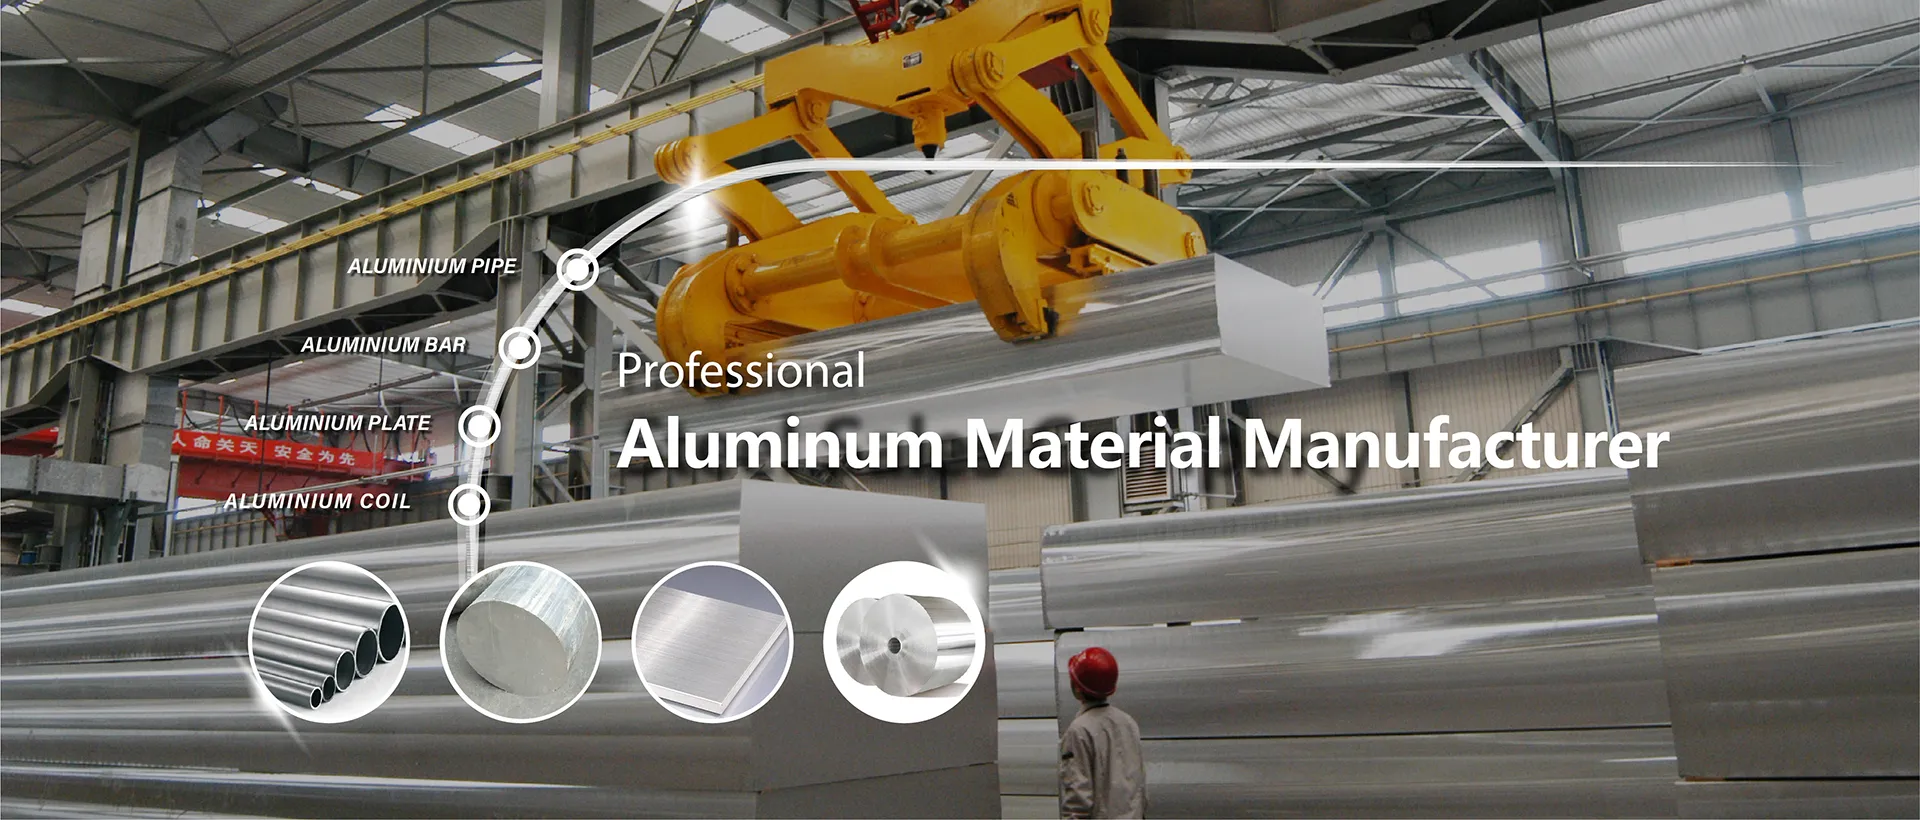 Aluminum Material Manufacturer